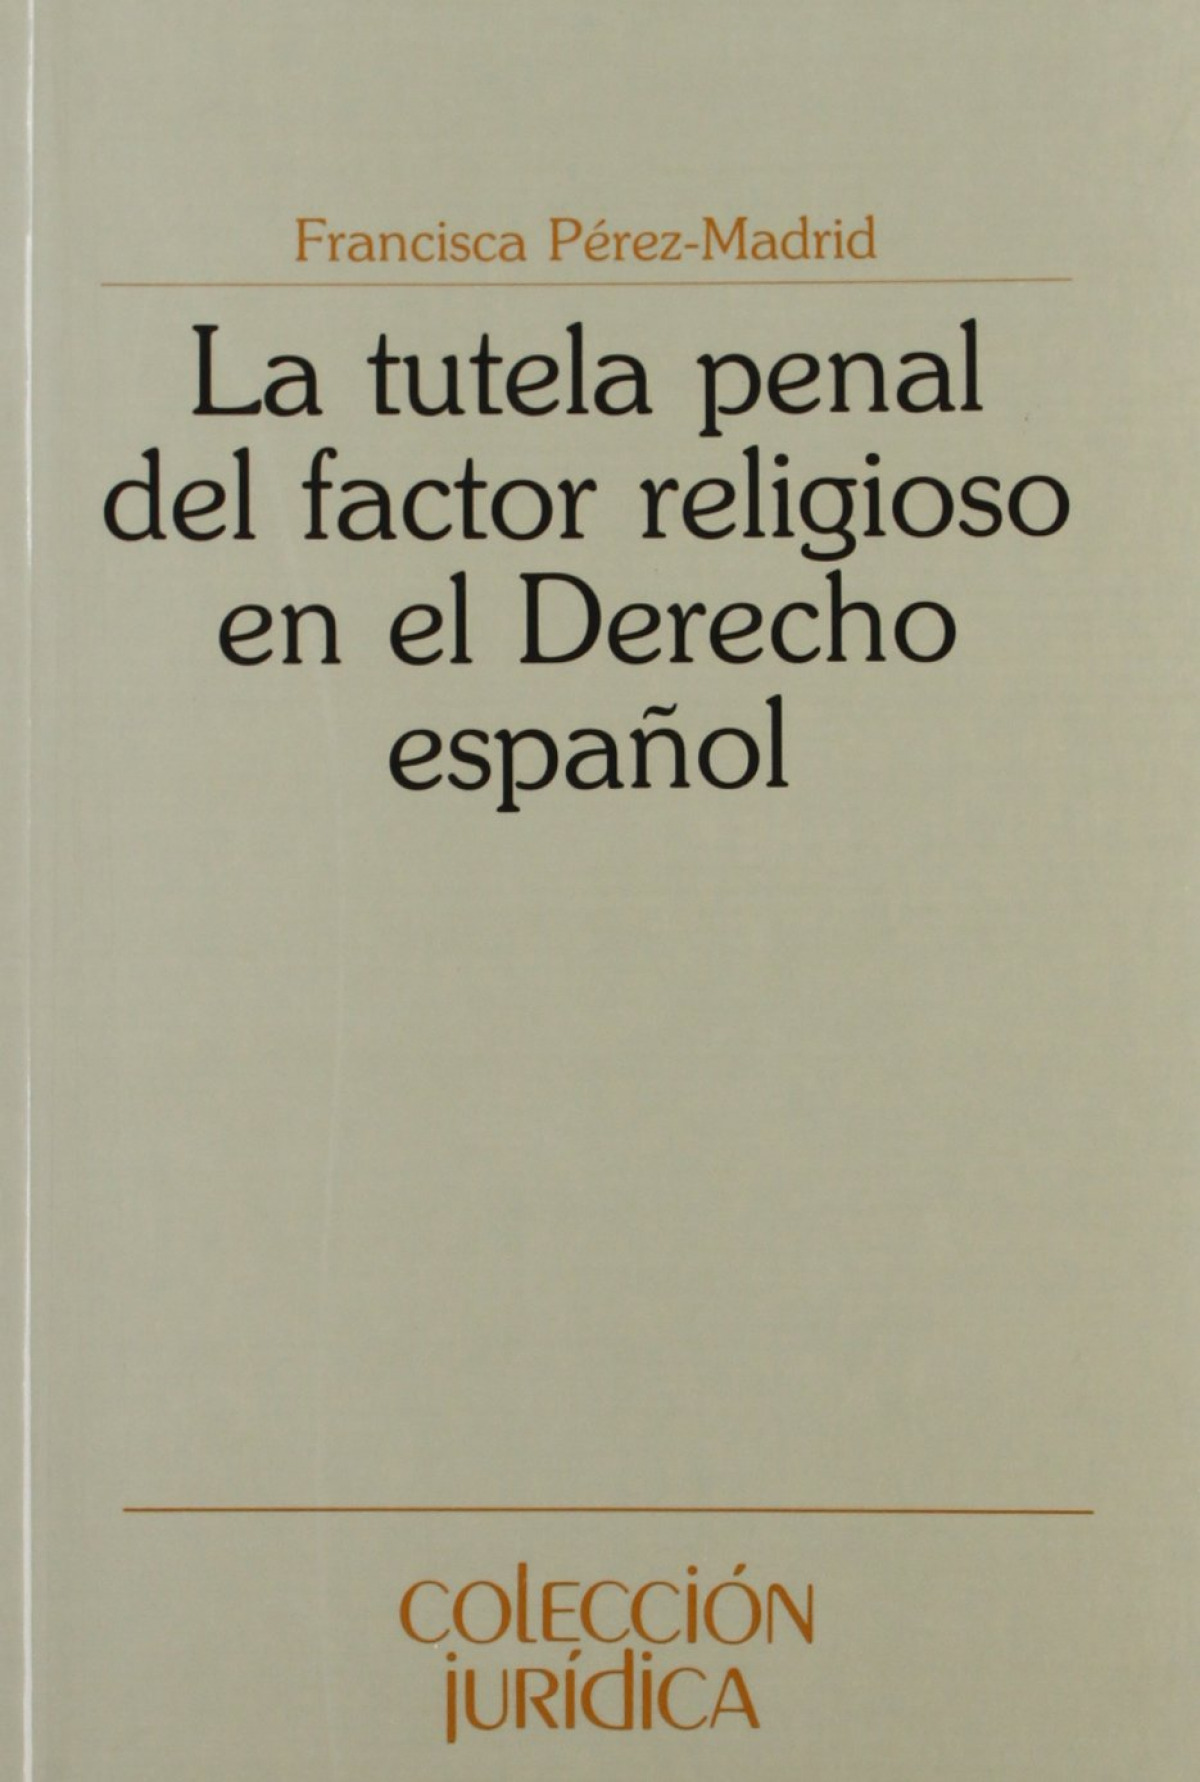 Tutela penal del factor religioso en el Derecho español, La - Francisca Pérez-Madrid